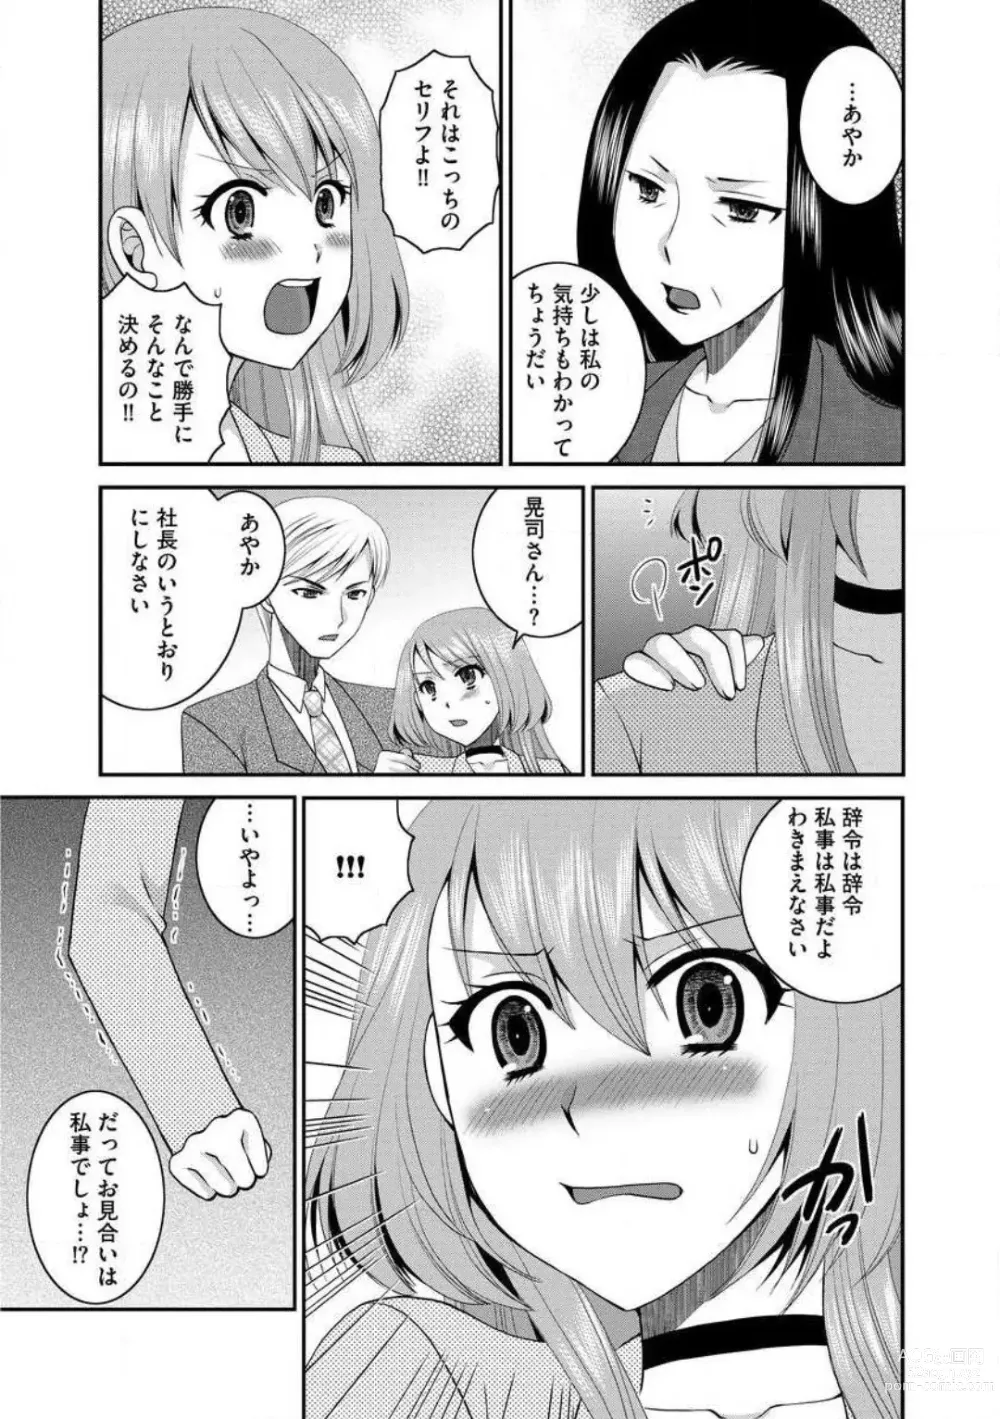 Page 128 of manga Otou-san to Ecchi. 1-6